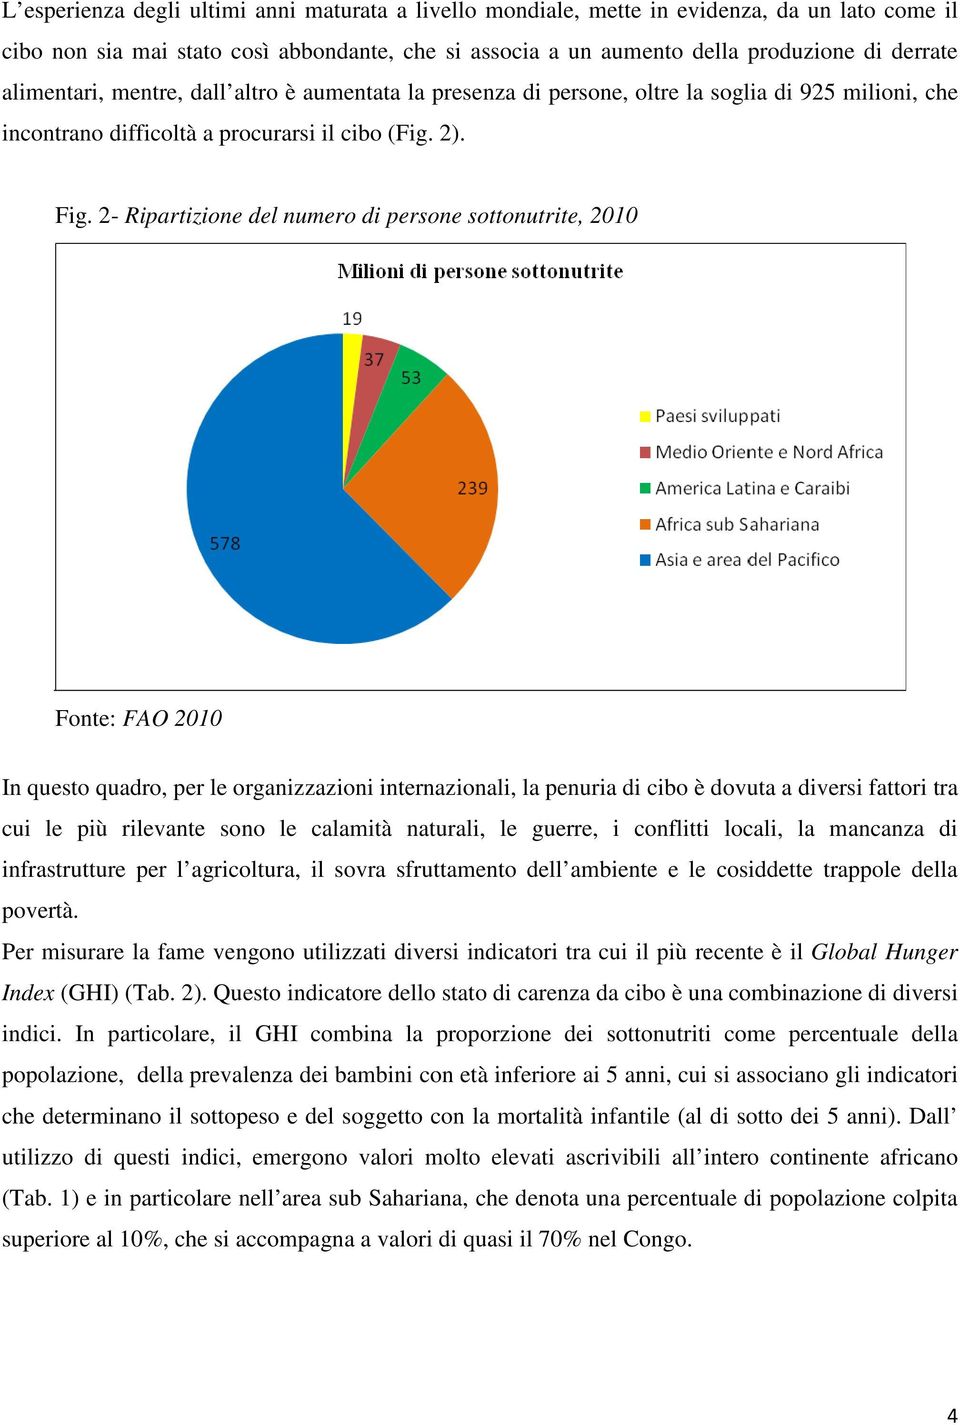 2- Ripartizione del numero di persone sottonutrite, 2010 Fonte: FAO 2010 In questo quadro, per le organizzazioni internazionali, la penuria di cibo è dovuta a diversi fattori tra cui le più rilevante